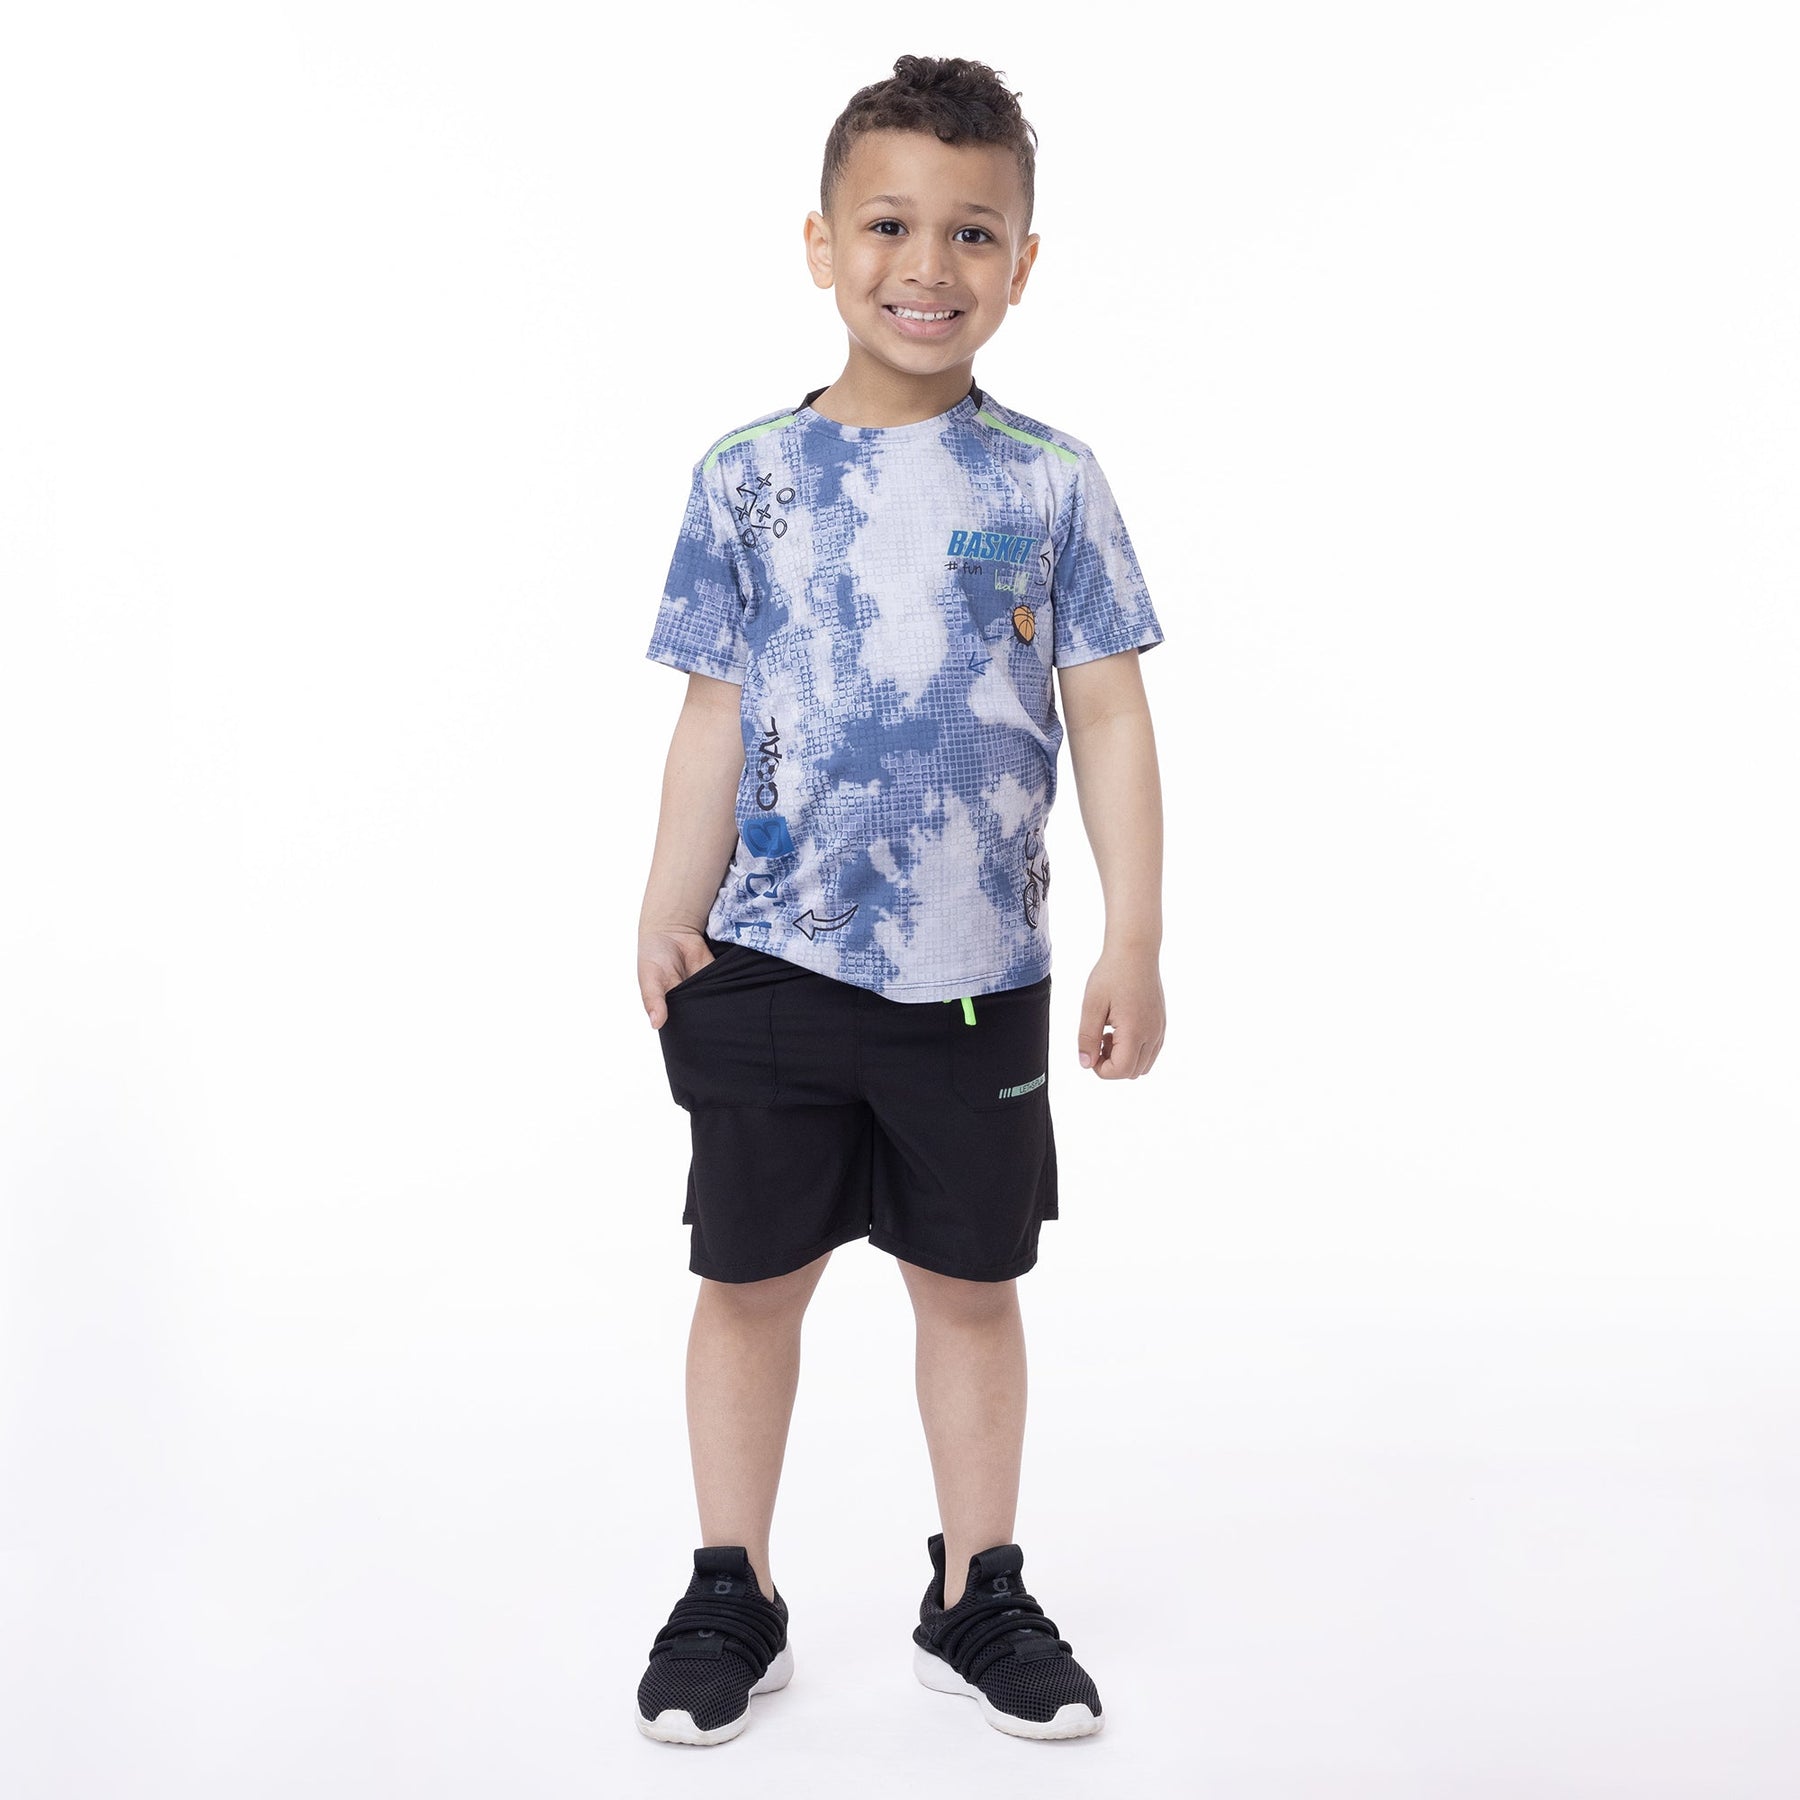 T-shirt athlétique pour enfant garçon par Nanö | F23A81-04 Bleu | Boutique Flos, vêtements mode pour bébés et enfants